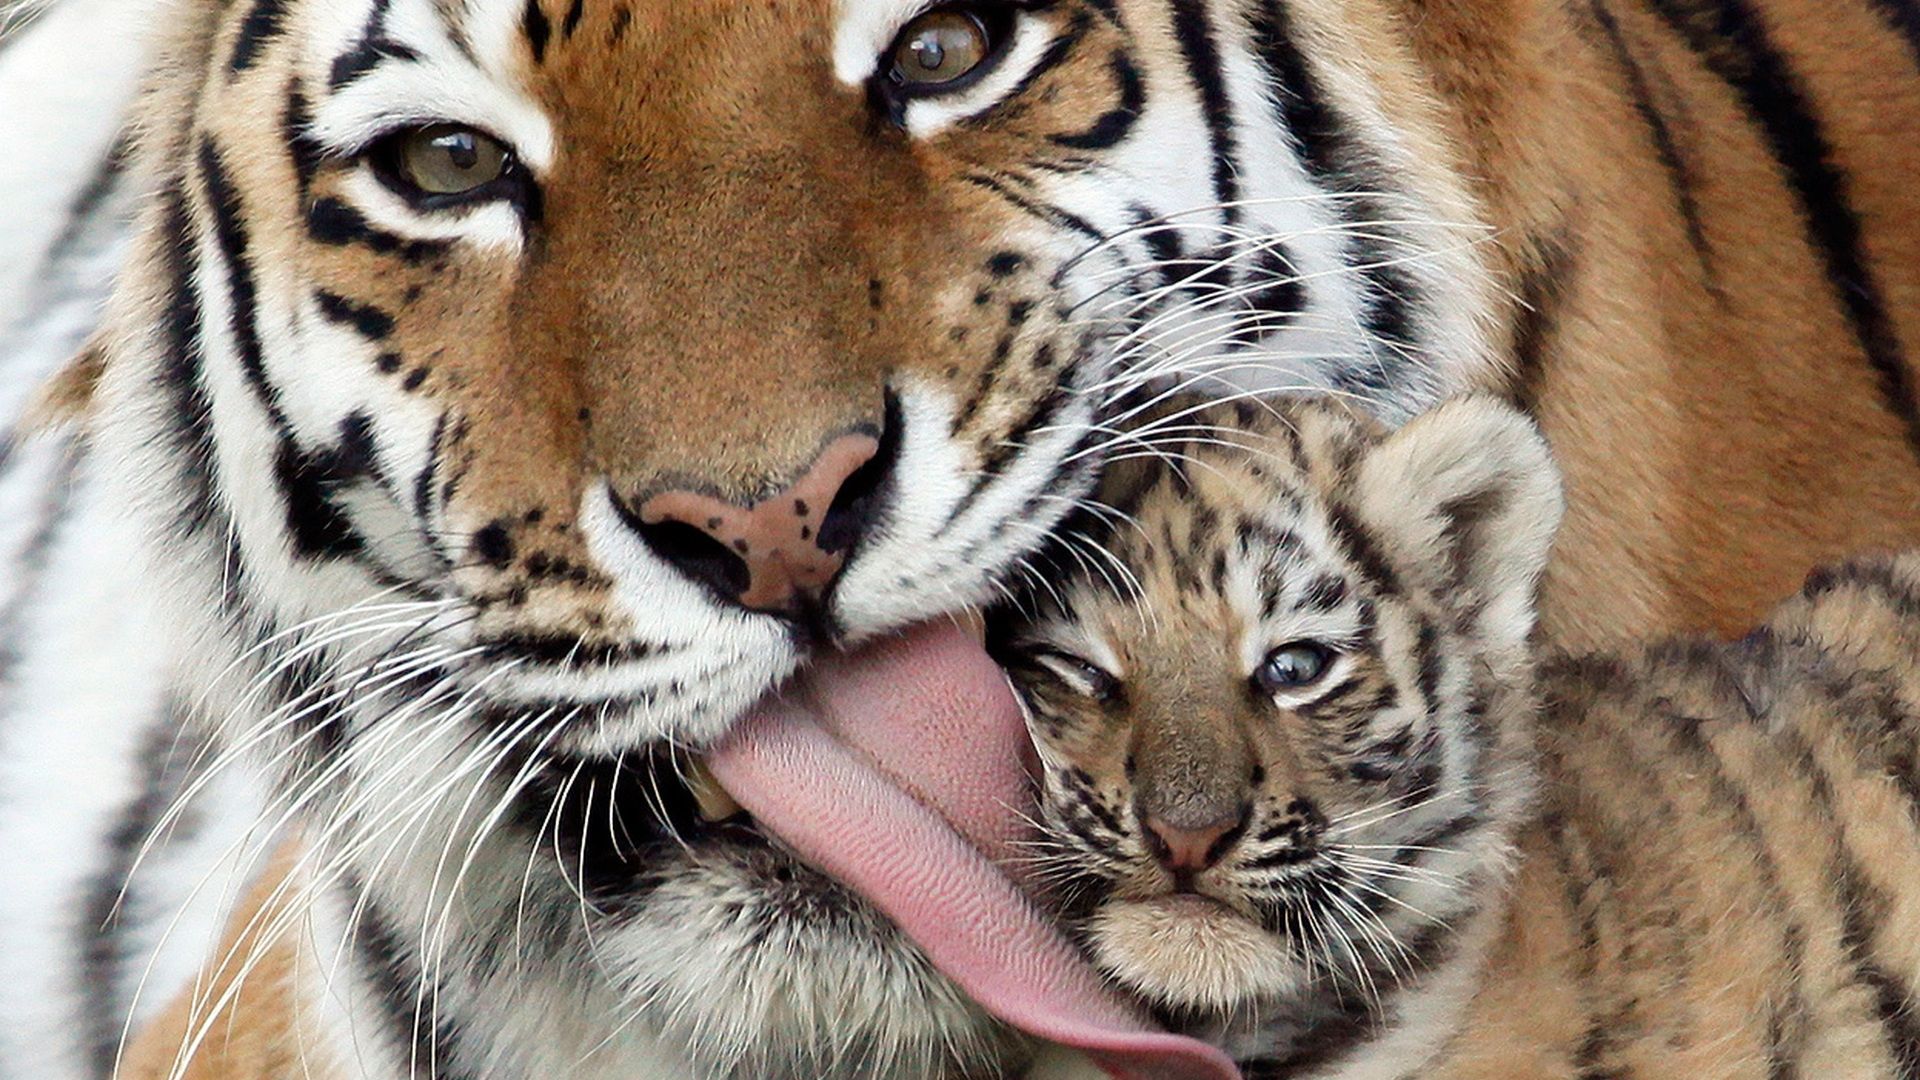 Tiger cub HD wallpaperx1080